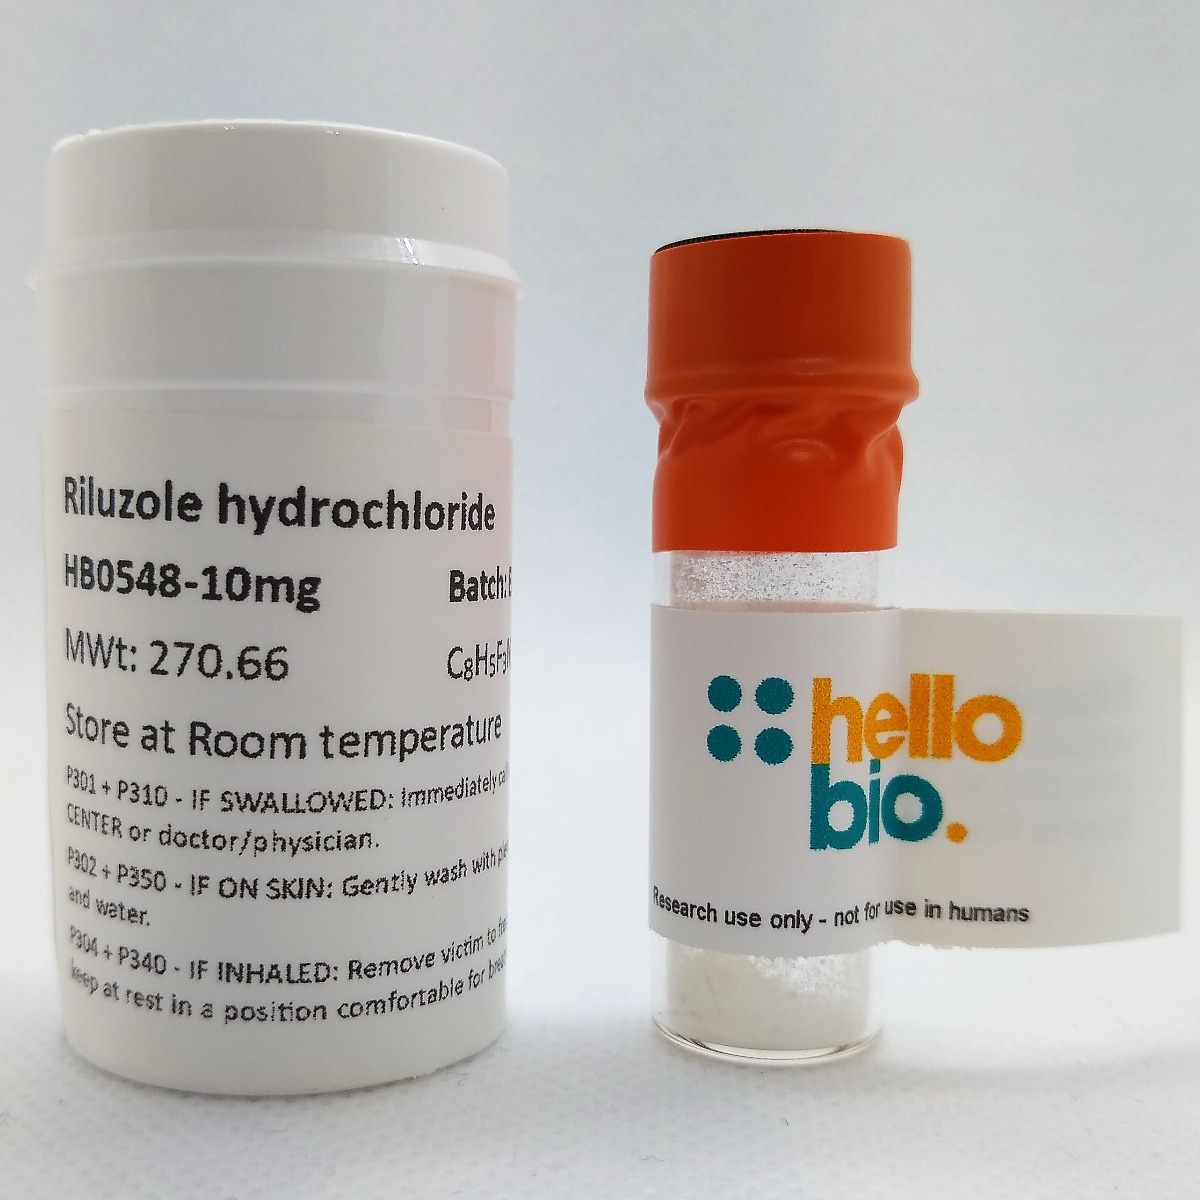 Riluzole hydrochloride product vial image | Hello Bio